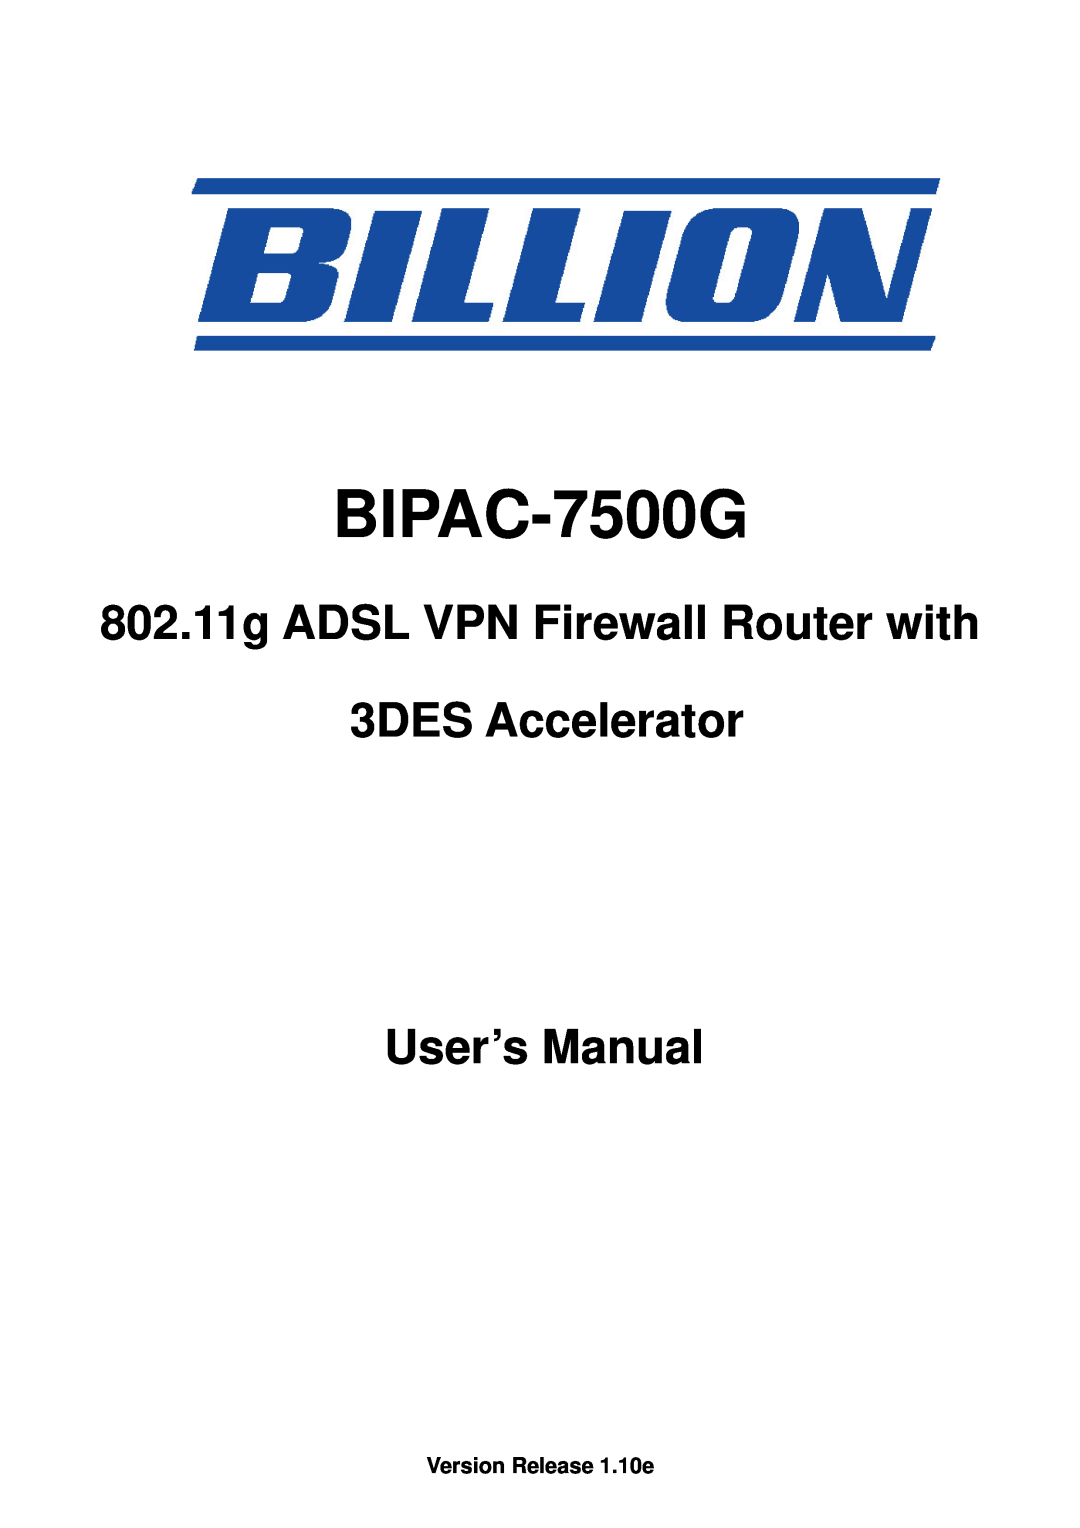 Billion Electric Company BIPAC-7500G user manual Version Release 1.10e 